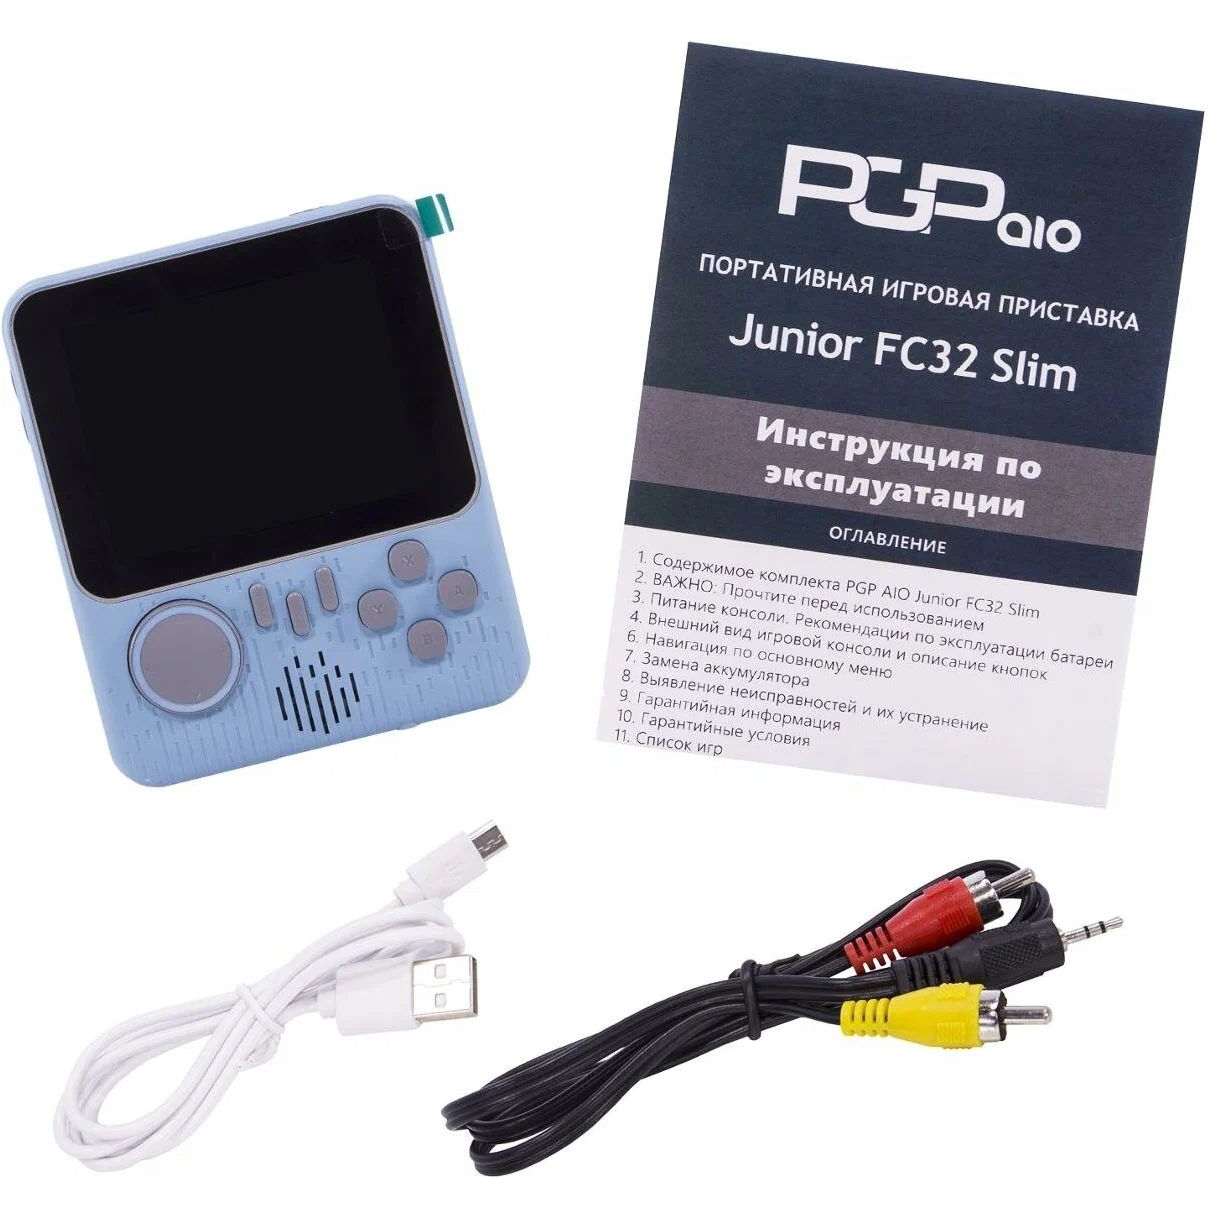 Игровая приставка PGP AIO Junior FC32a Slim голубая (500 игр, 8 Bit) PKTP28 - фото 1